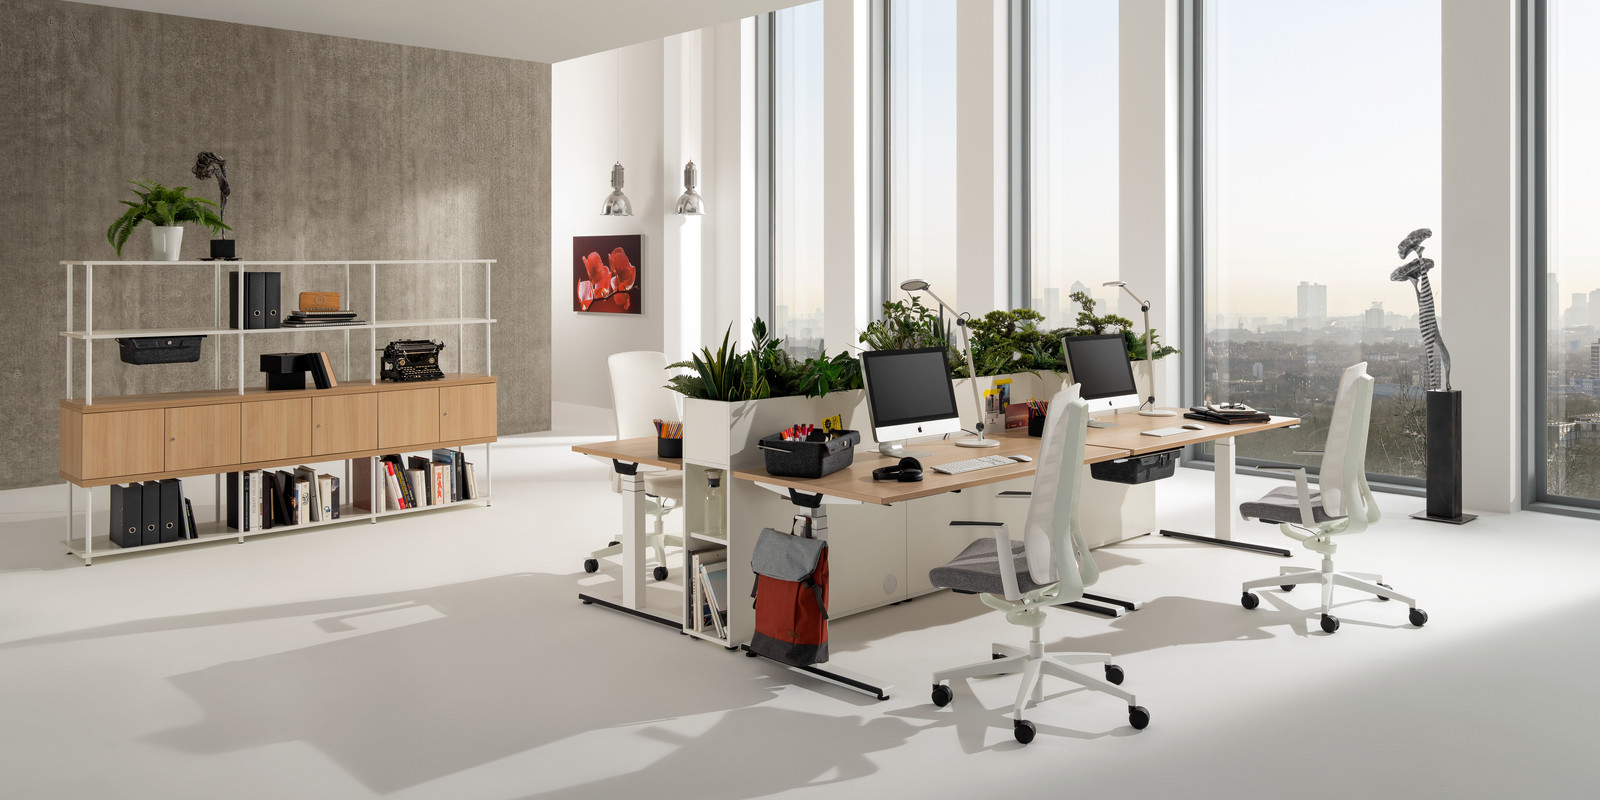 Angebotsauftakt 2023: Steh-Sitz-Tisch WINEA STARTUP 2.0 zum Aktionspreis bei pro office Hannover Bild 1